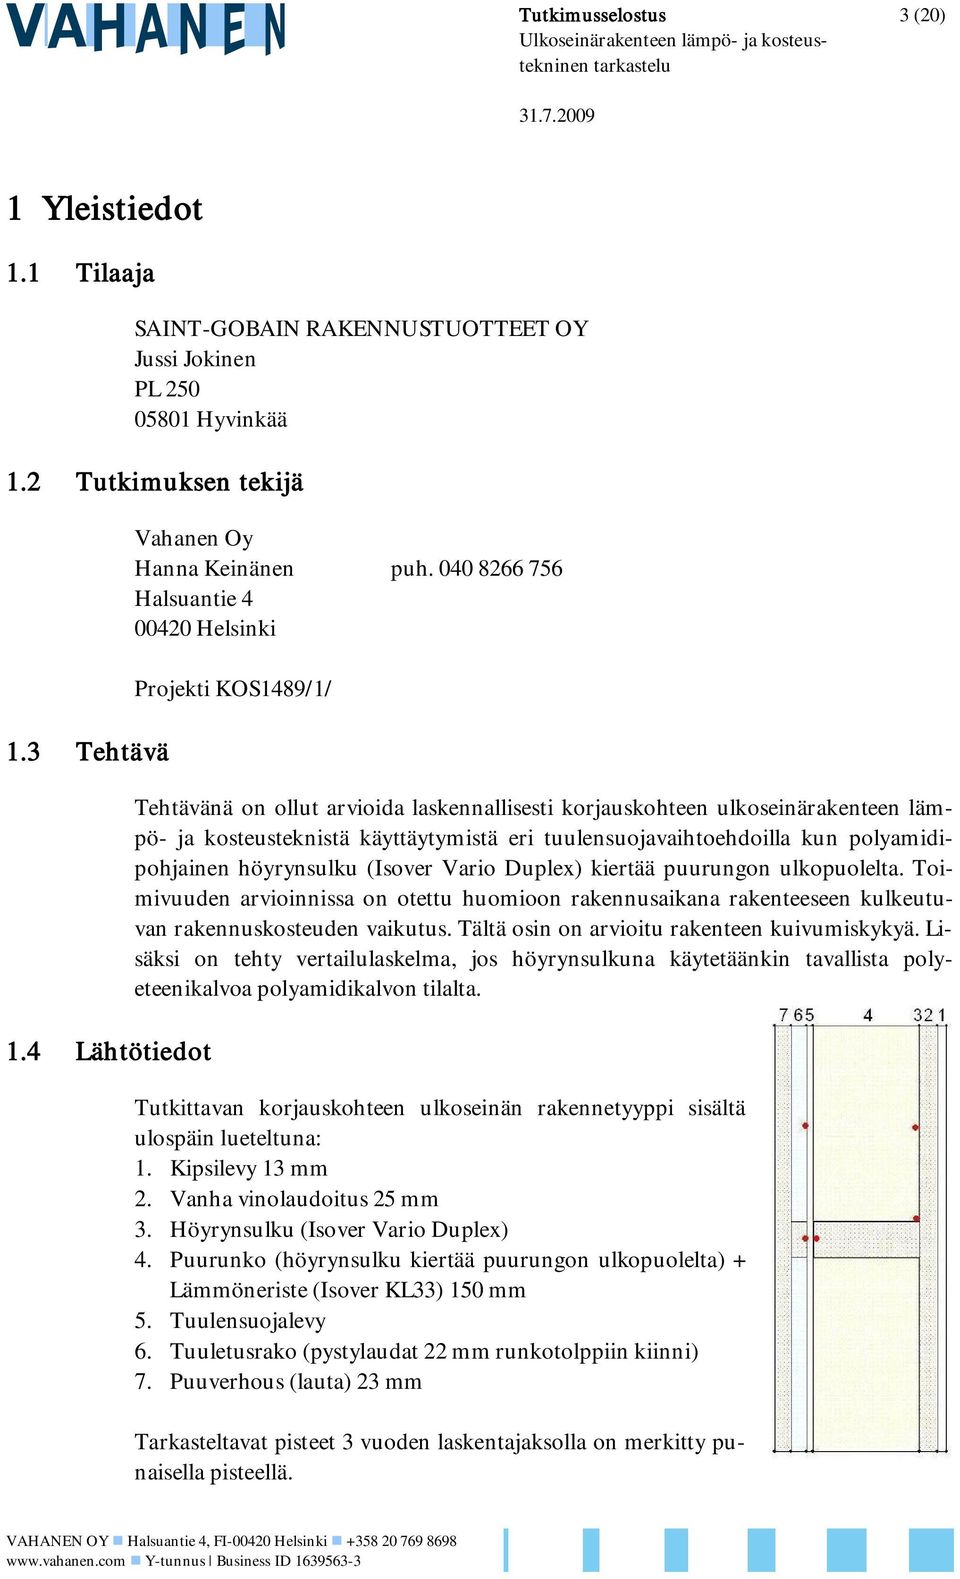 040 8266 756 Halsuantie 4 00420 Helsinki Projekti KOS1489/1/ Tehtävänä on ollut arvioida laskennallisesti korjauskohteen ulkoseinärakenteen lämpö- ja kosteusteknistä käyttäytymistä eri